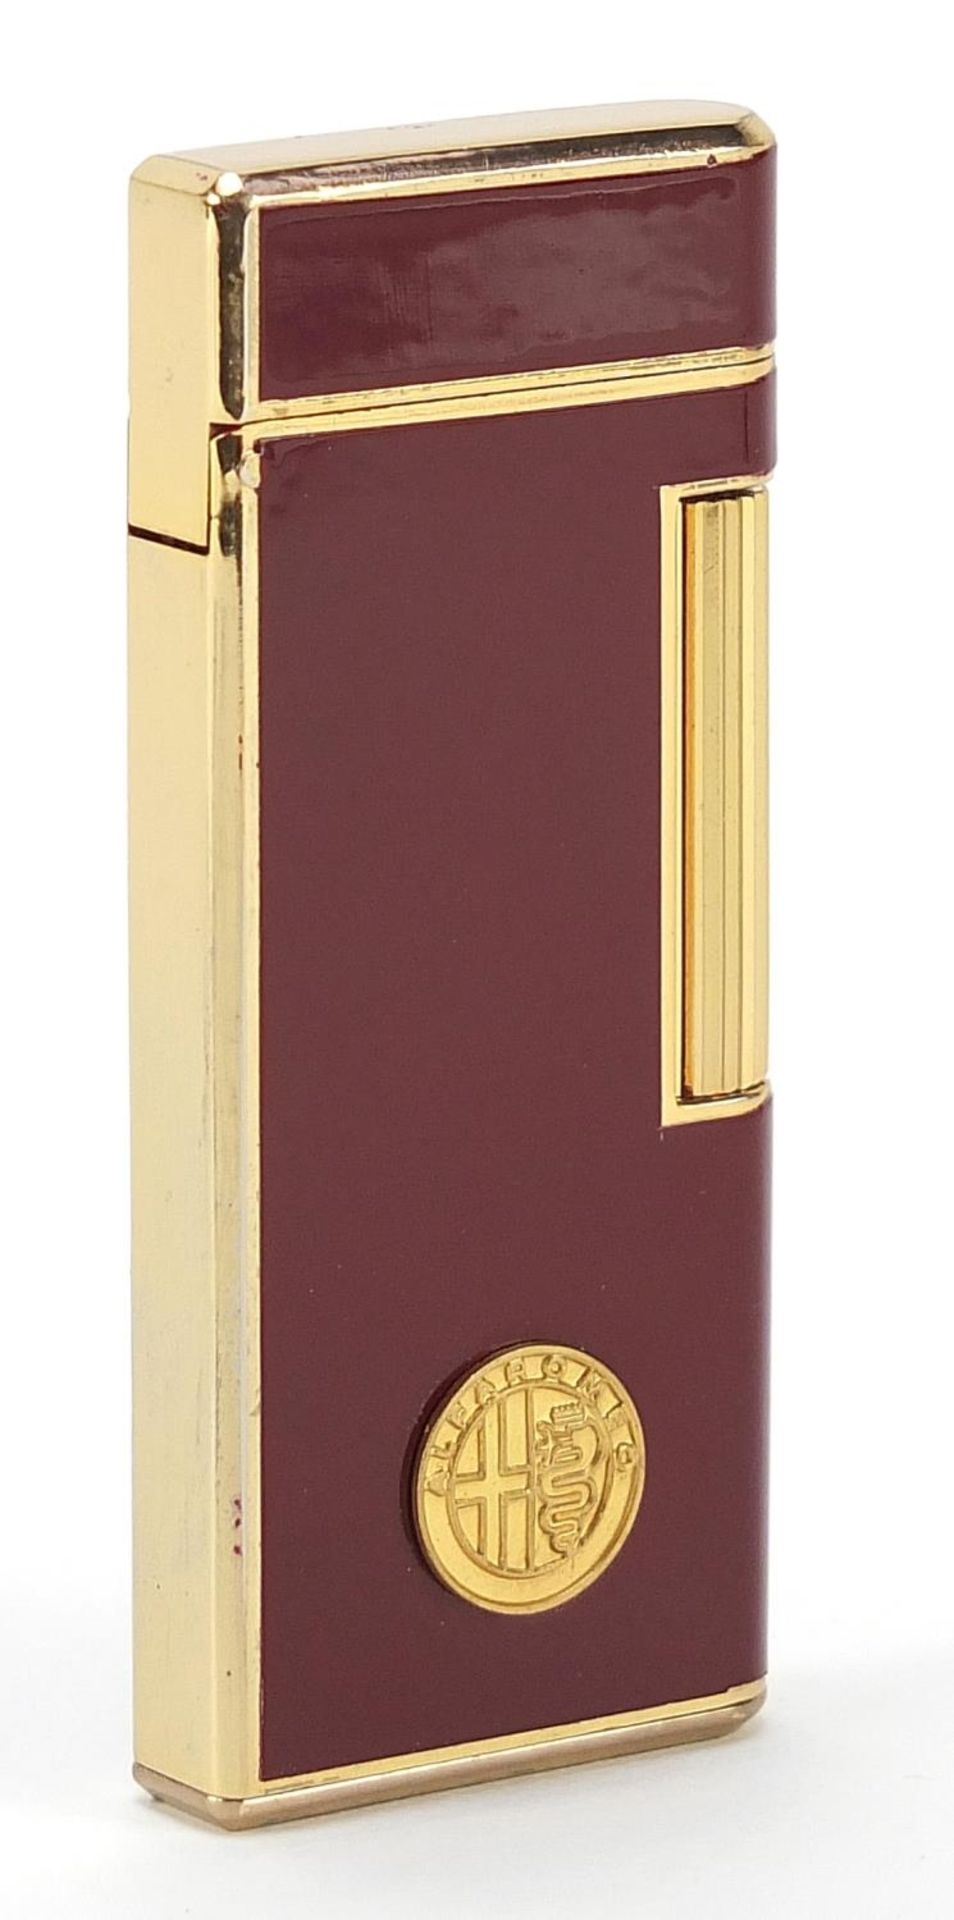 Saffa Alpha Romeo design pocket lighter, 7cm high